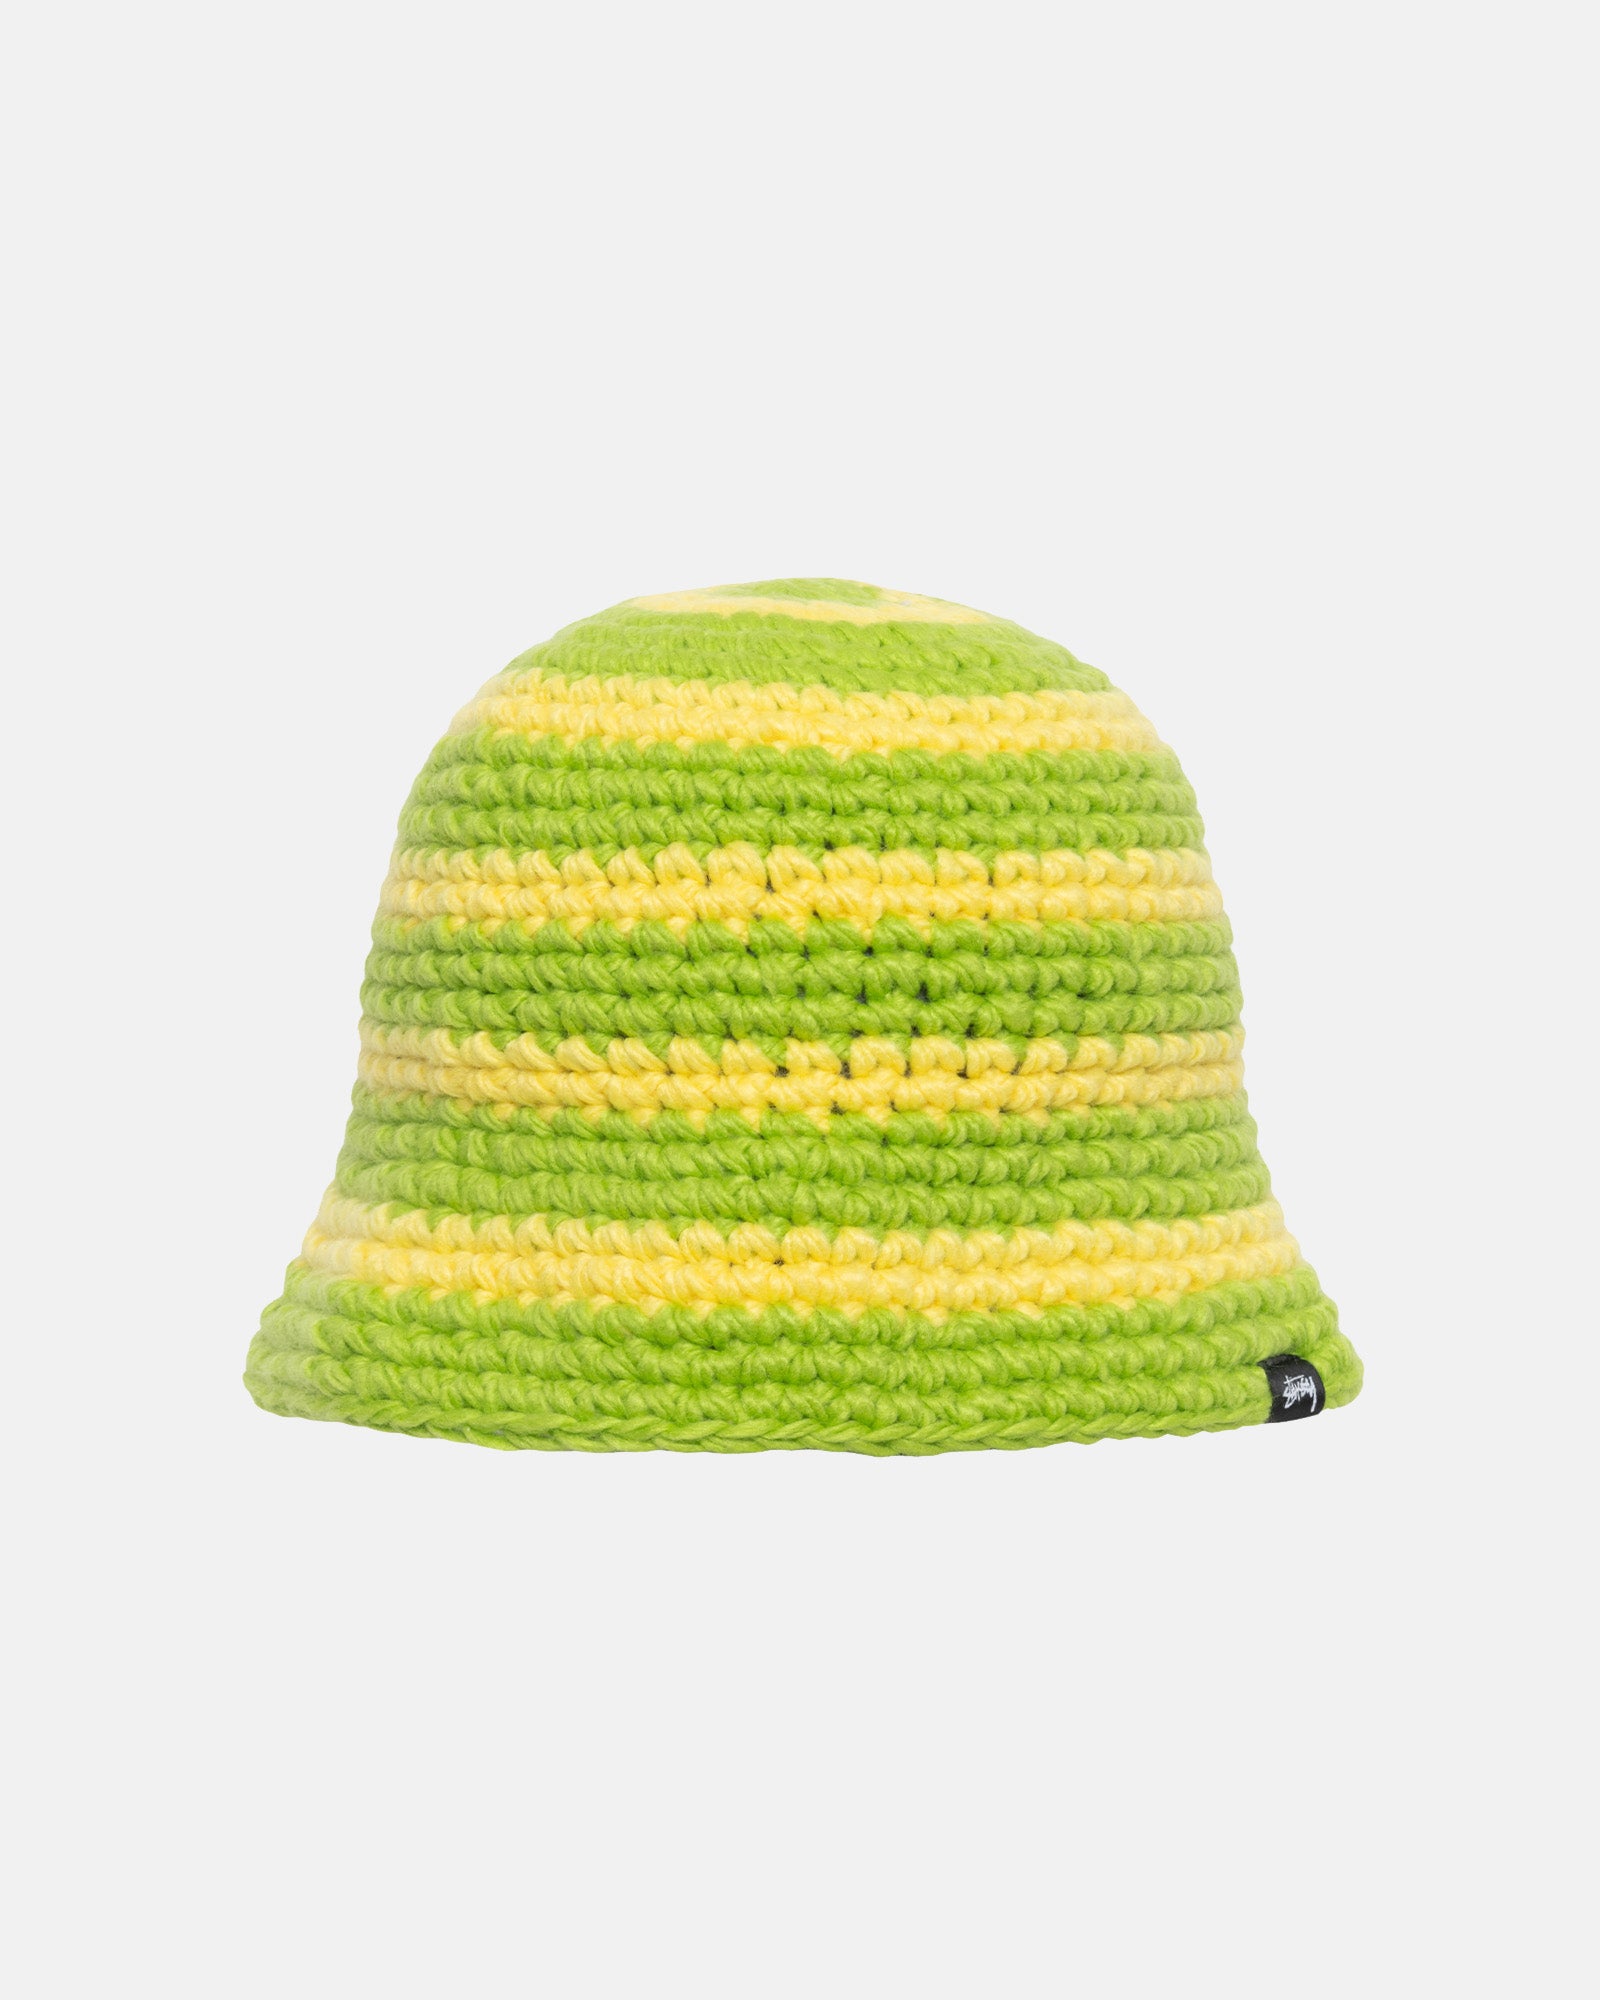 Swirl Knit Bucket Hat - Unisex Headwear | Stüssy